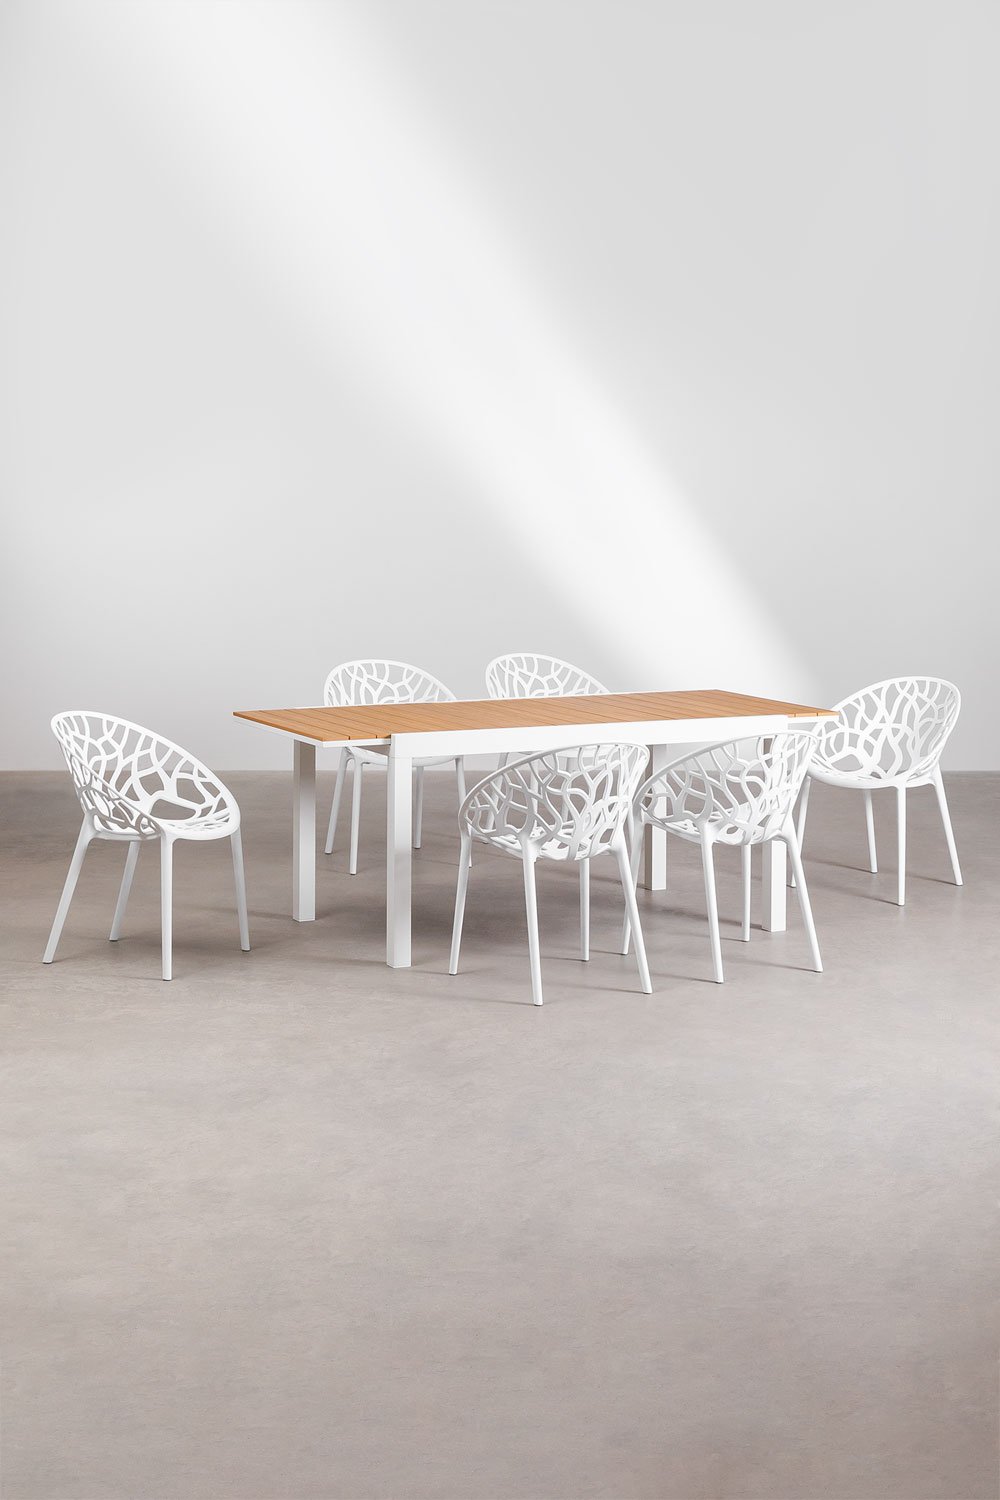 Set aus ausziehbarem rechteckigem Tisch aus Aluminium (150-197x90 cm) Saura und 6 stapelbaren Gartenstühlen Ores, Galeriebild 1